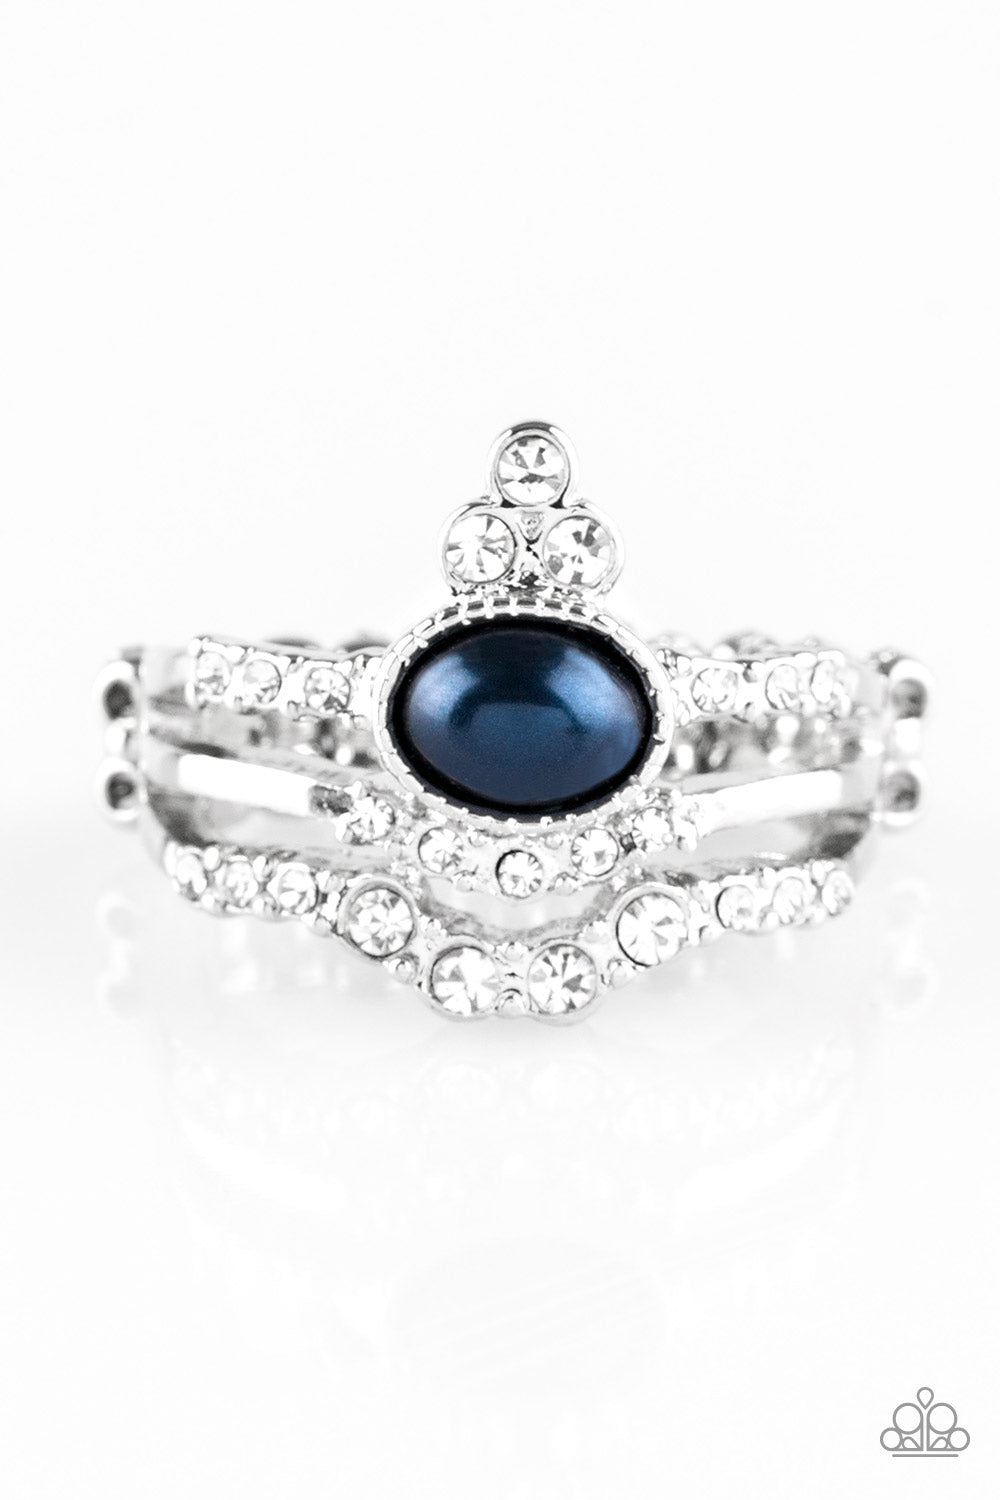 Paparazzi Timeless Tiaras - Blue - Rhinestone Ring - $5 Jewelry With Ashley Swint